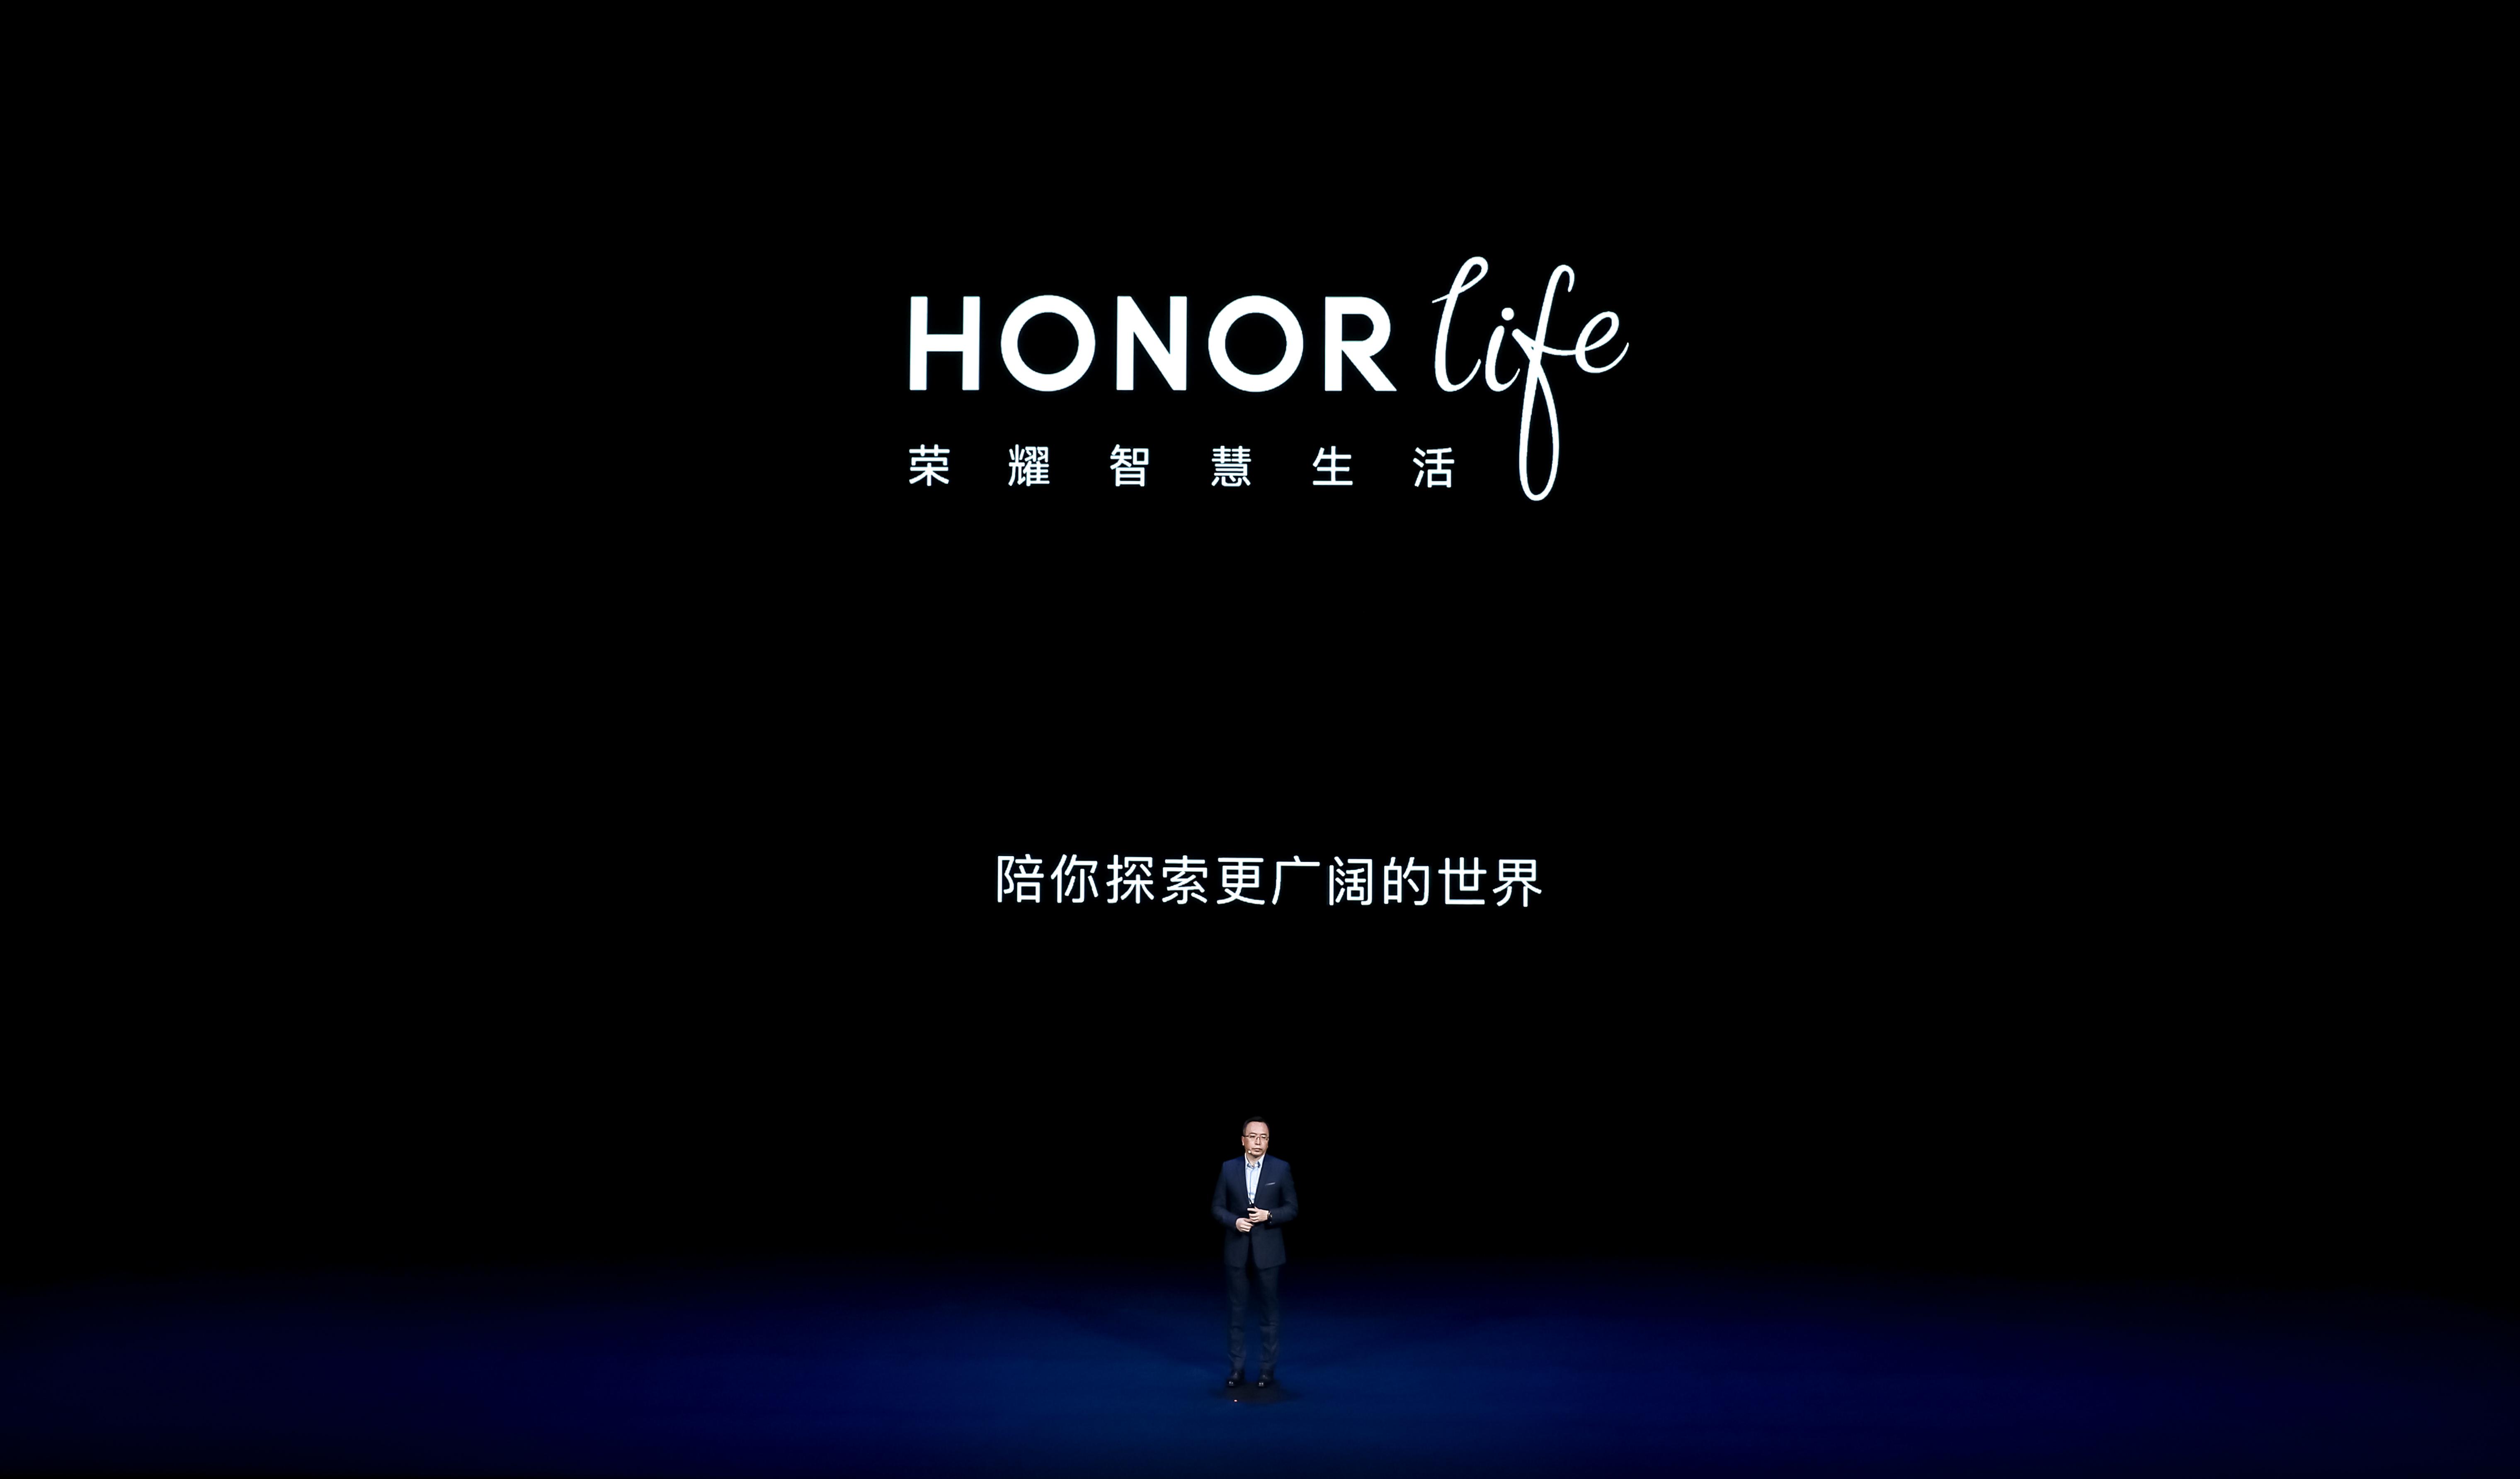 荣耀 logo3未来从长远发展来看,honor荣耀有着相对更广阔的天地